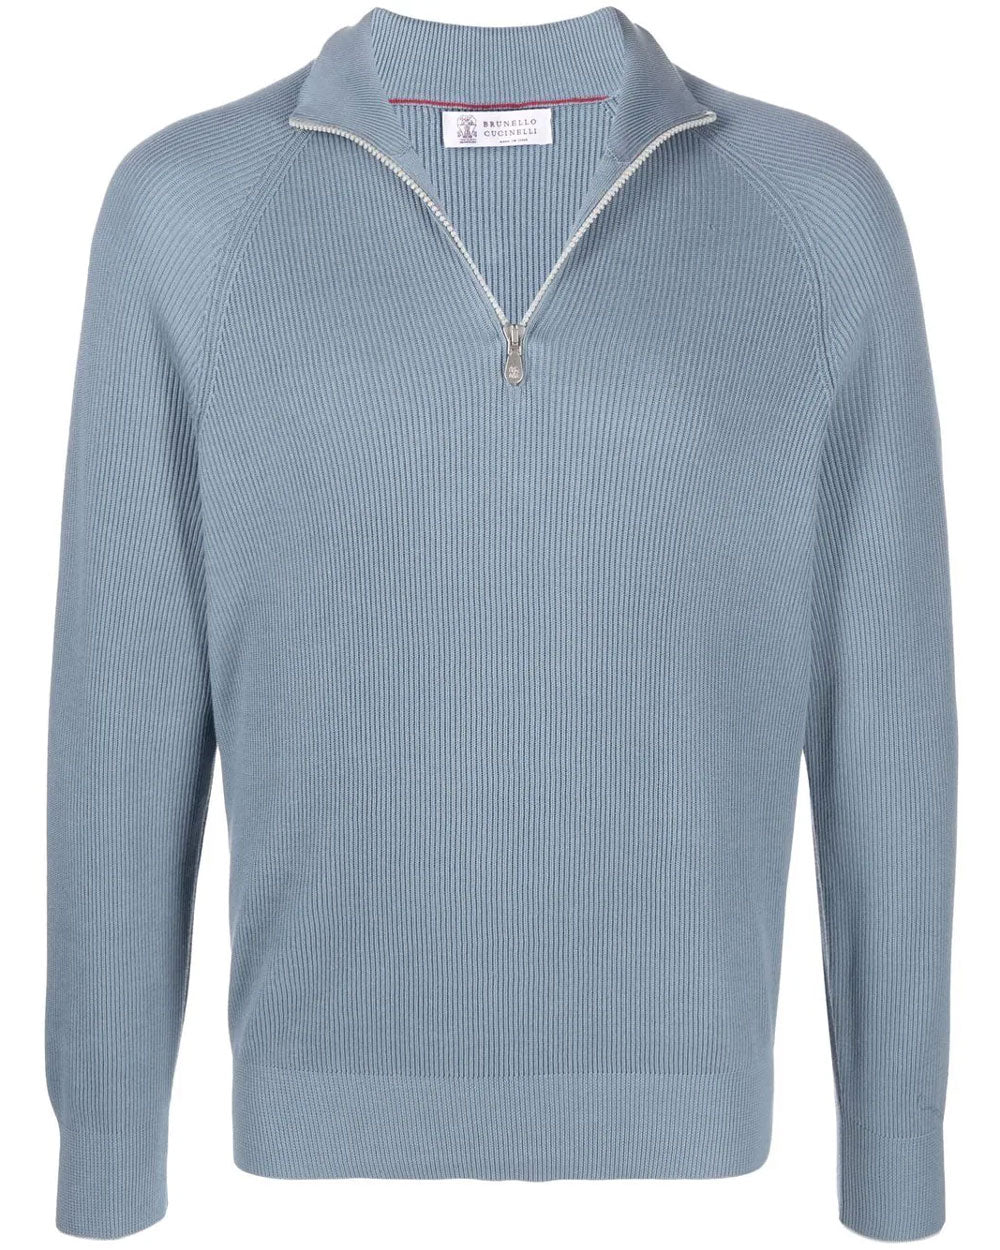 Medium Blue Half Zip Rib Knit Sweater